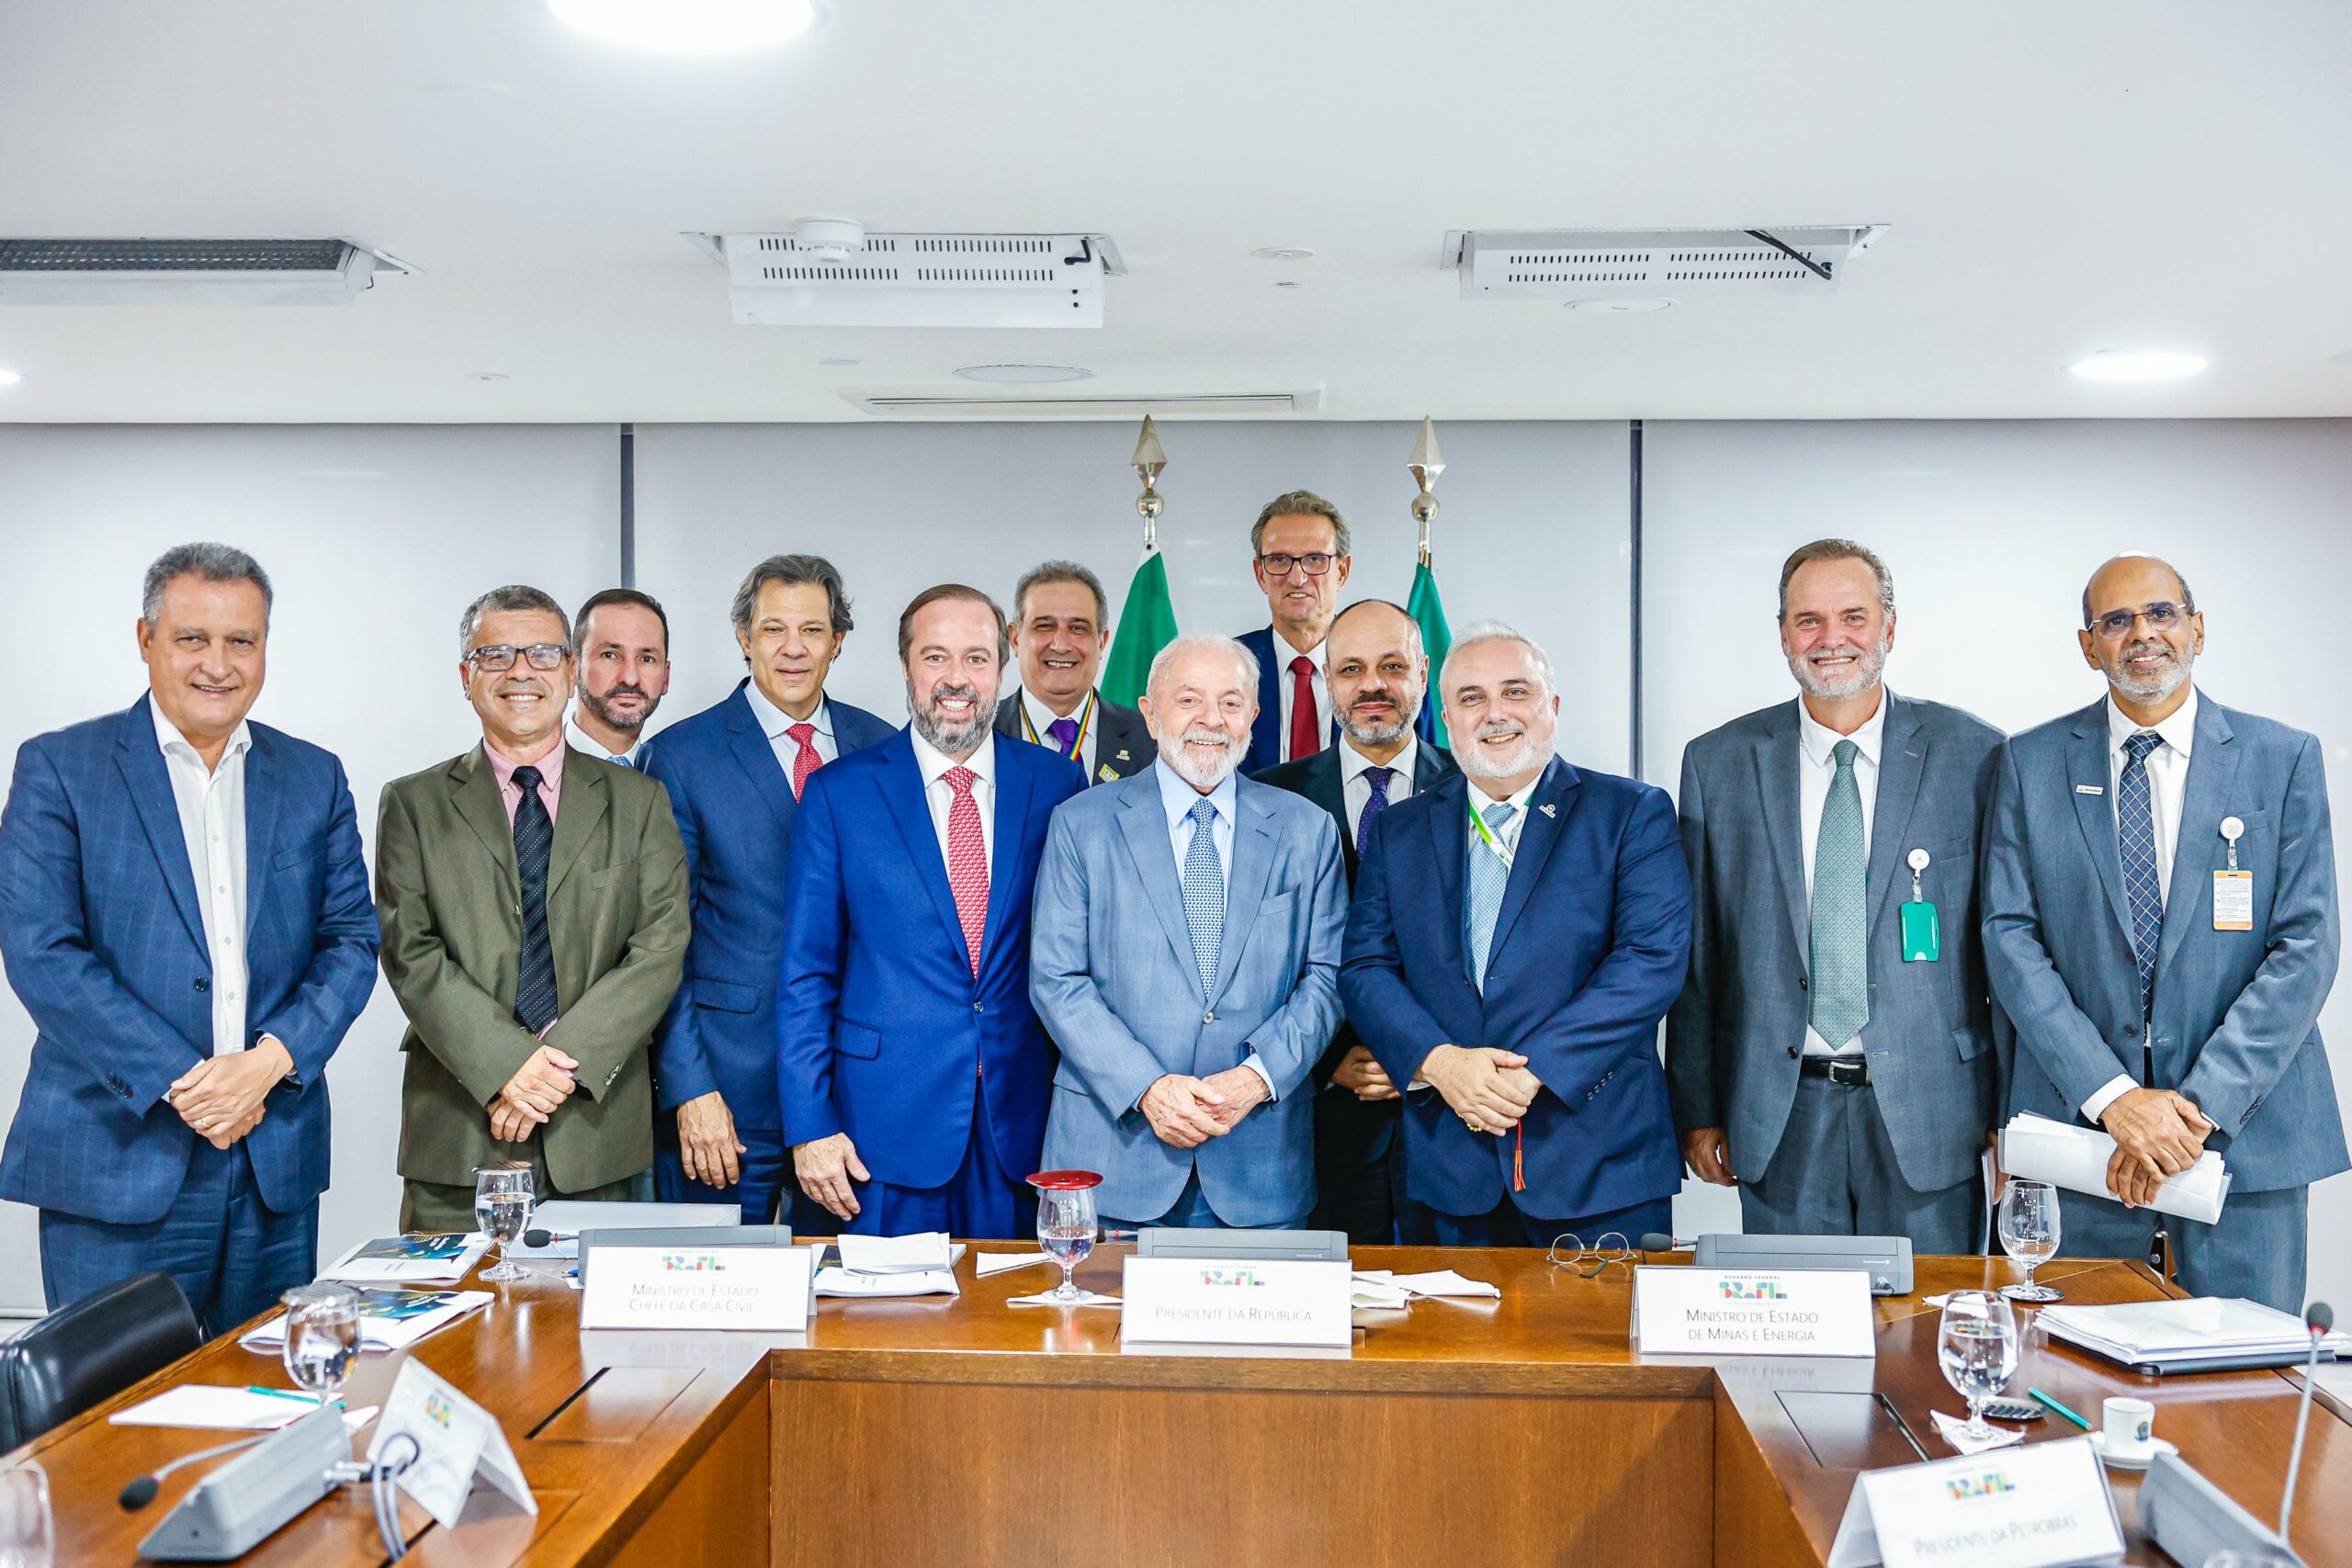 Reunião com o presidente Lula, diretores da Petrobras e com os ministros Fernando Haddad, Rui Costa e Alexandre Silveira